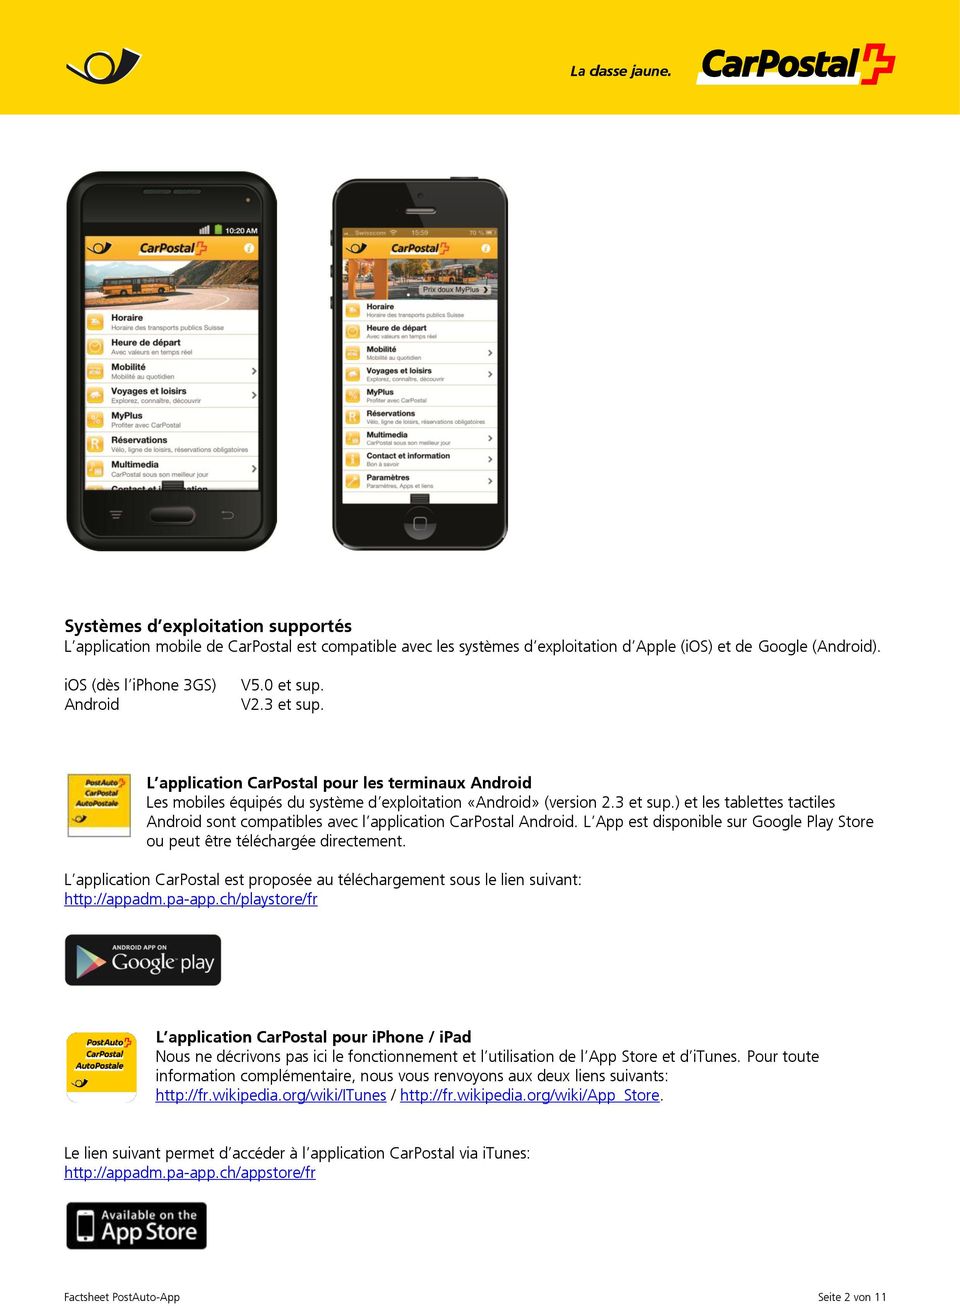 L App est disponible sur Google Play Store ou peut être téléchargée directement. L application CarPostal est proposée au téléchargement sous le lien suivant: http://appadm.pa-app.